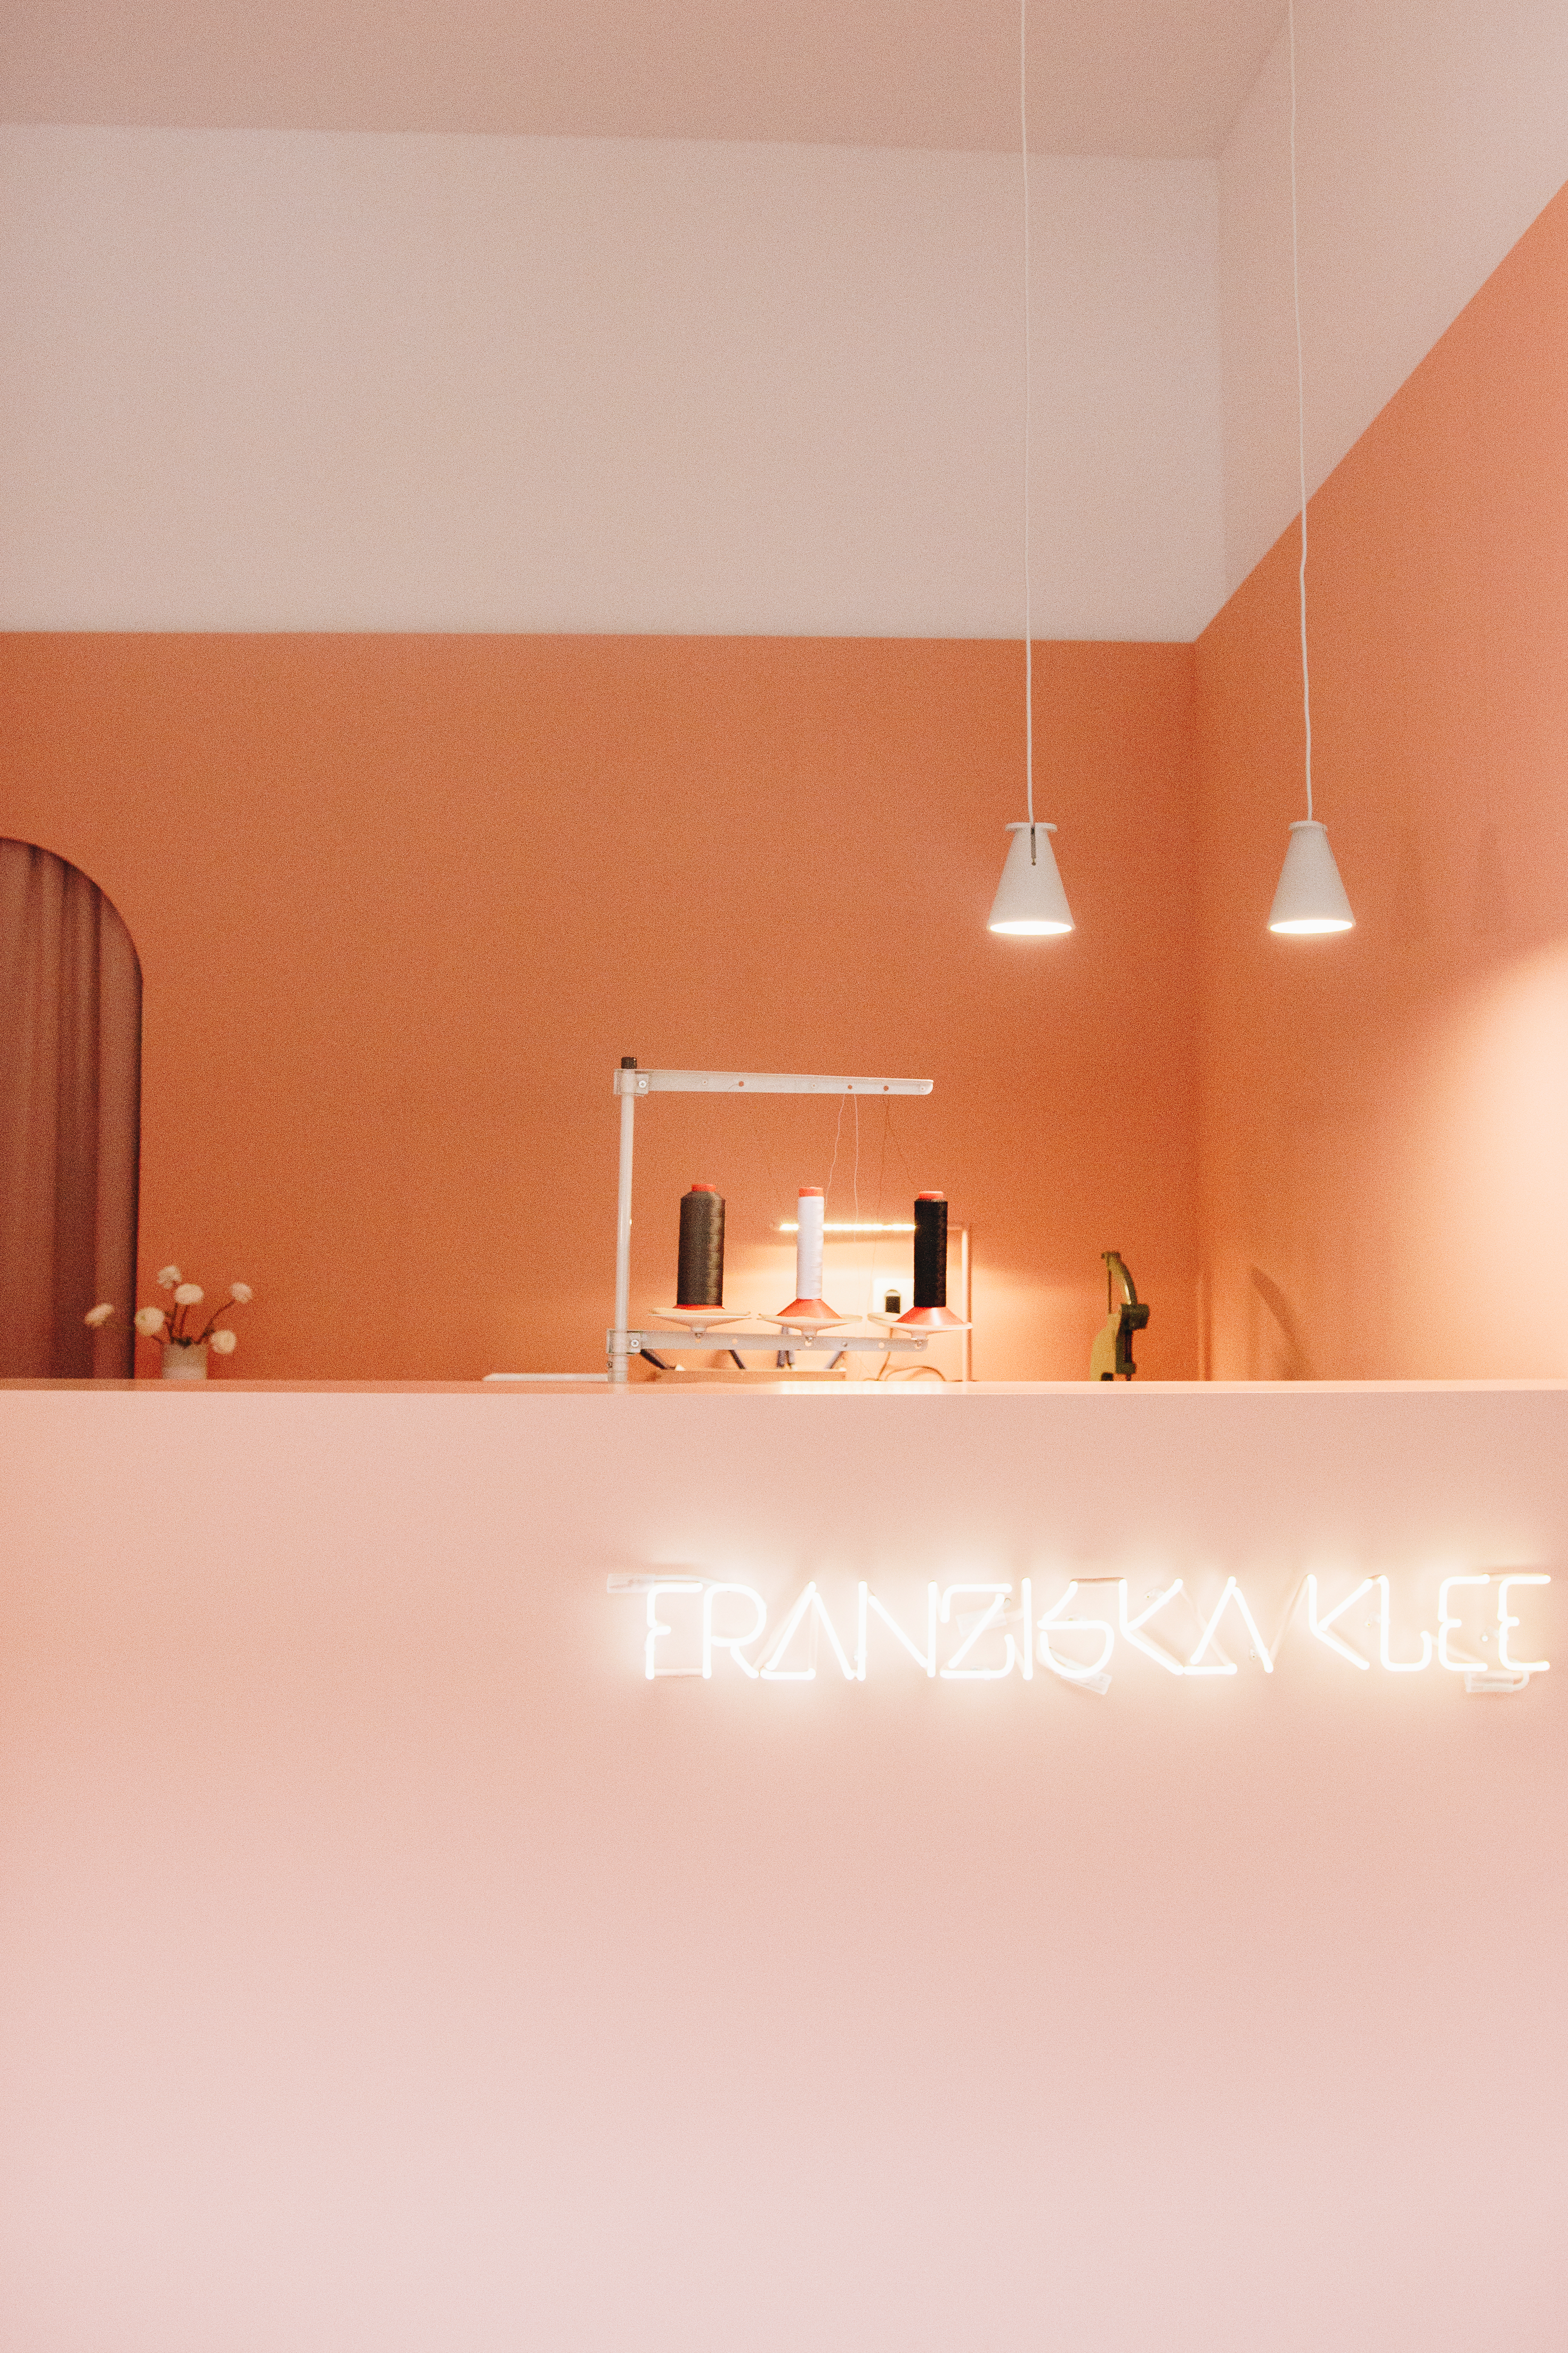 Franziska Klee